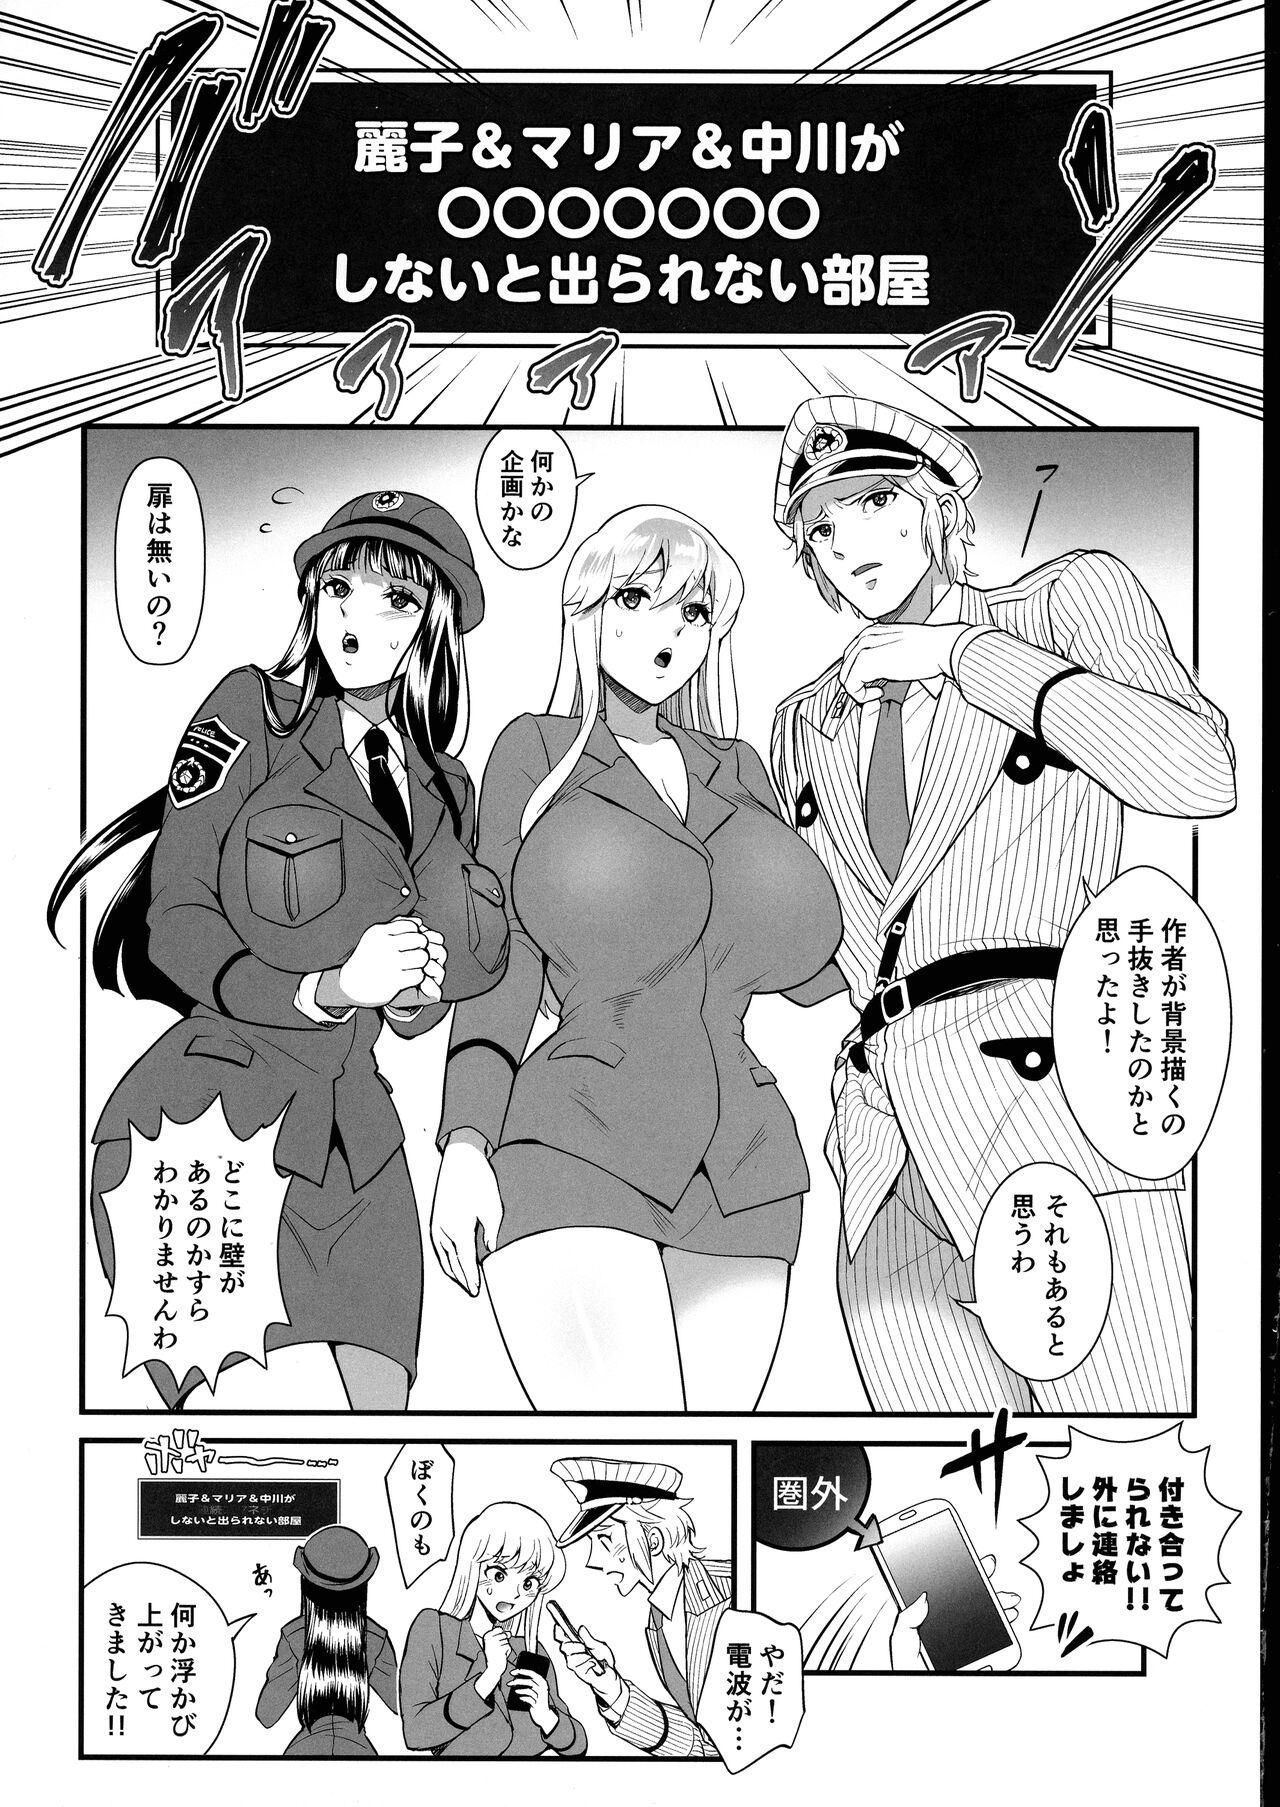 Rola Reiko & Maria & Nakagawa ga Ogeretsuna Koto o Shinai to derarenai Heya no Maki - Kochikame Funny - Page 4